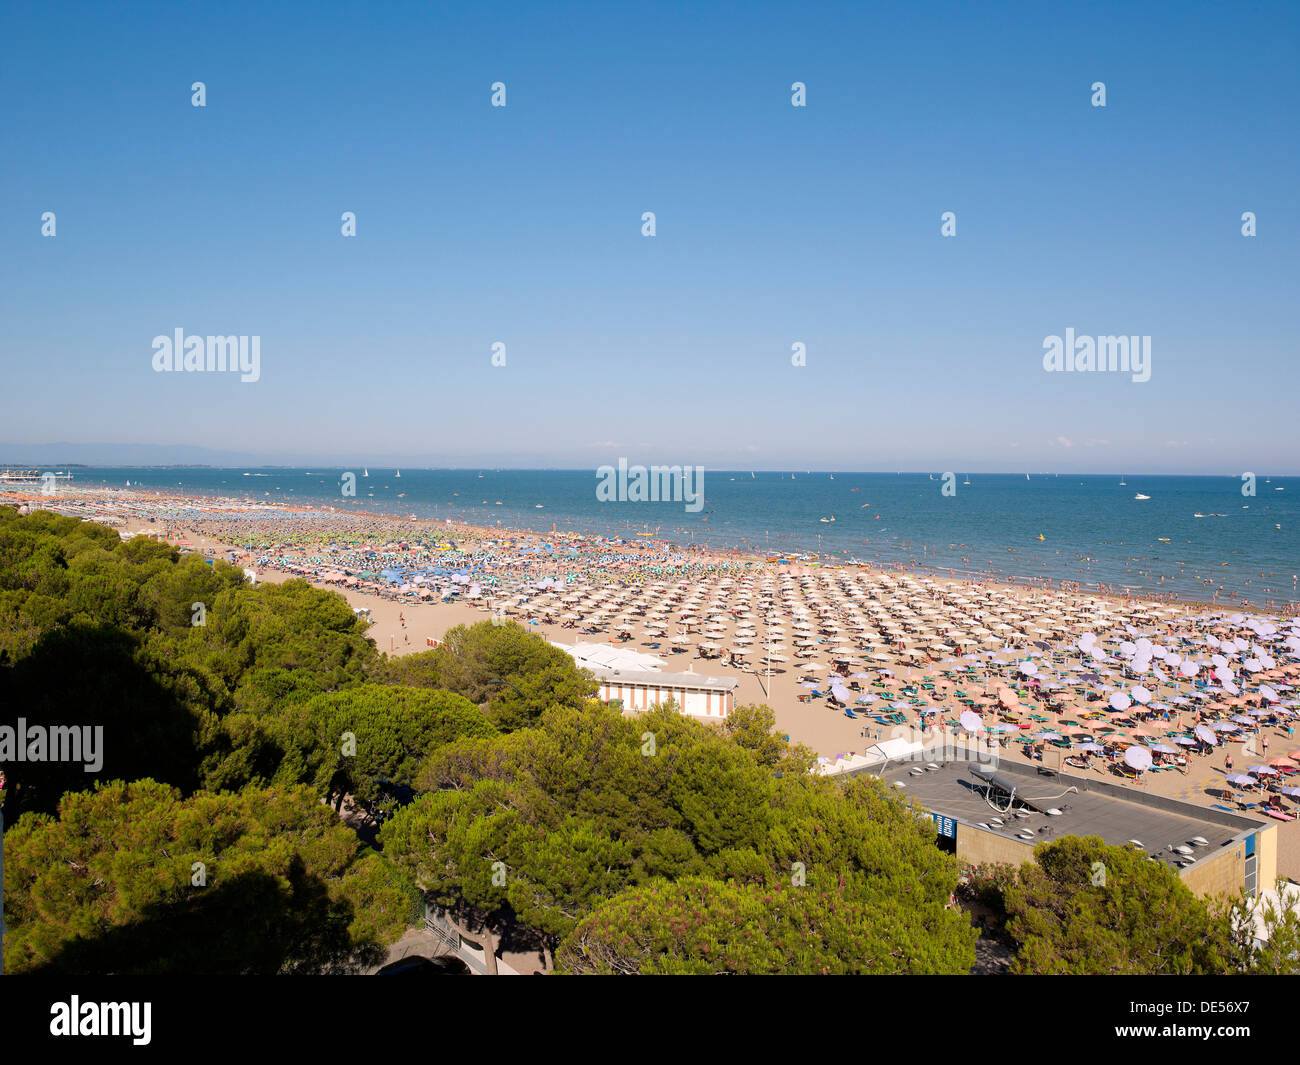 Vista della spiaggia con ombrelloni e sedie a sdraio, Lignano Sabbiadoro,  Udine, costa Adriatica, Italia, Europa Foto stock - Alamy